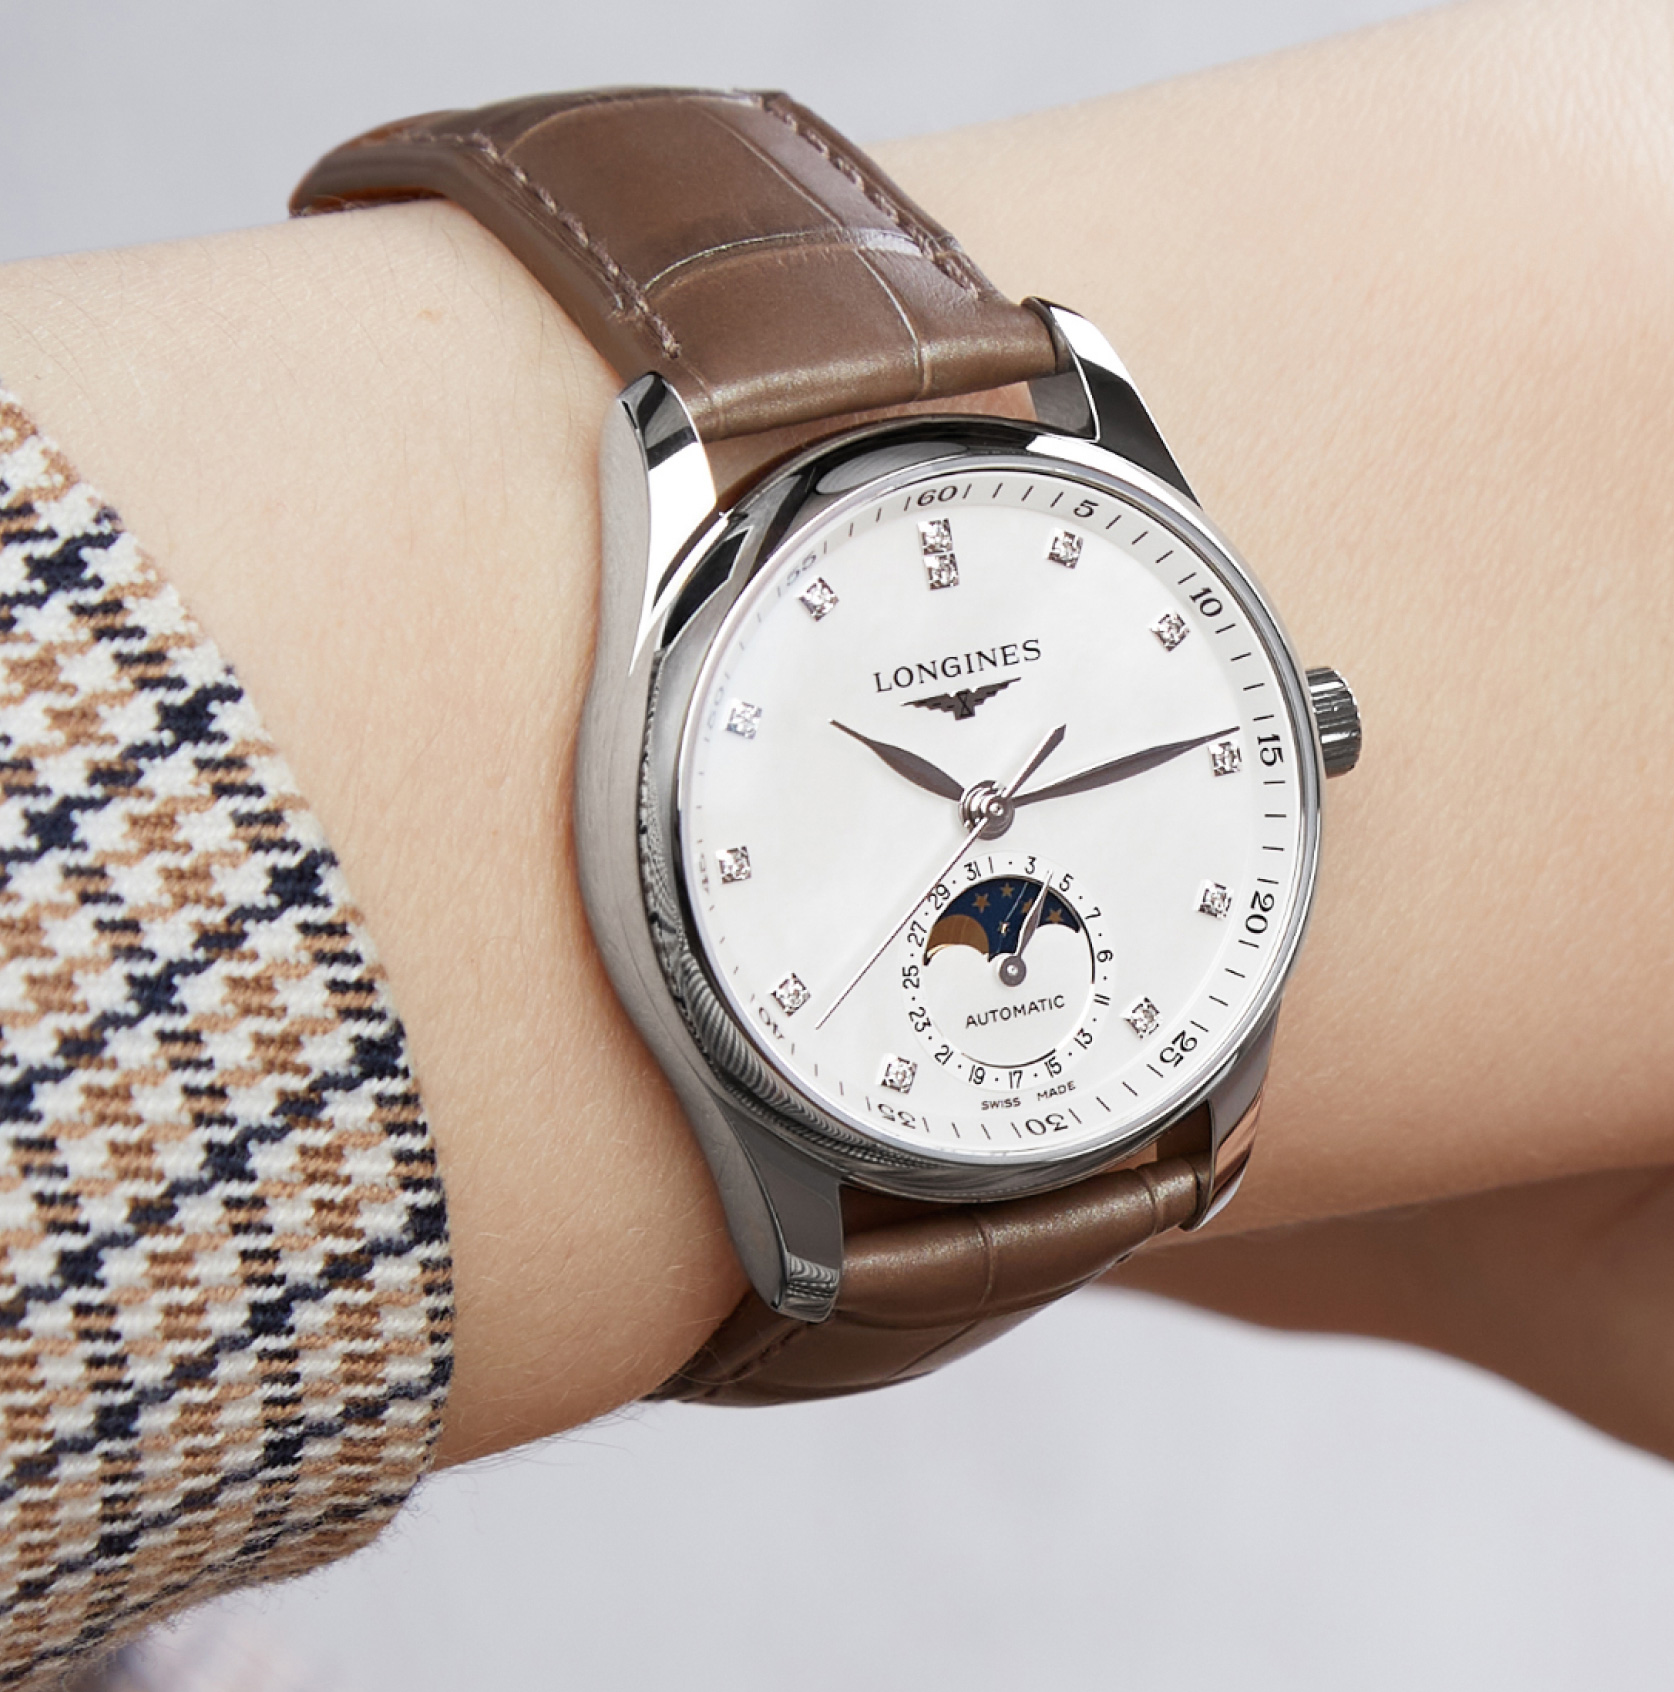 Классические часы на женском запястье. Фотосессия часов компании Watch approach.
